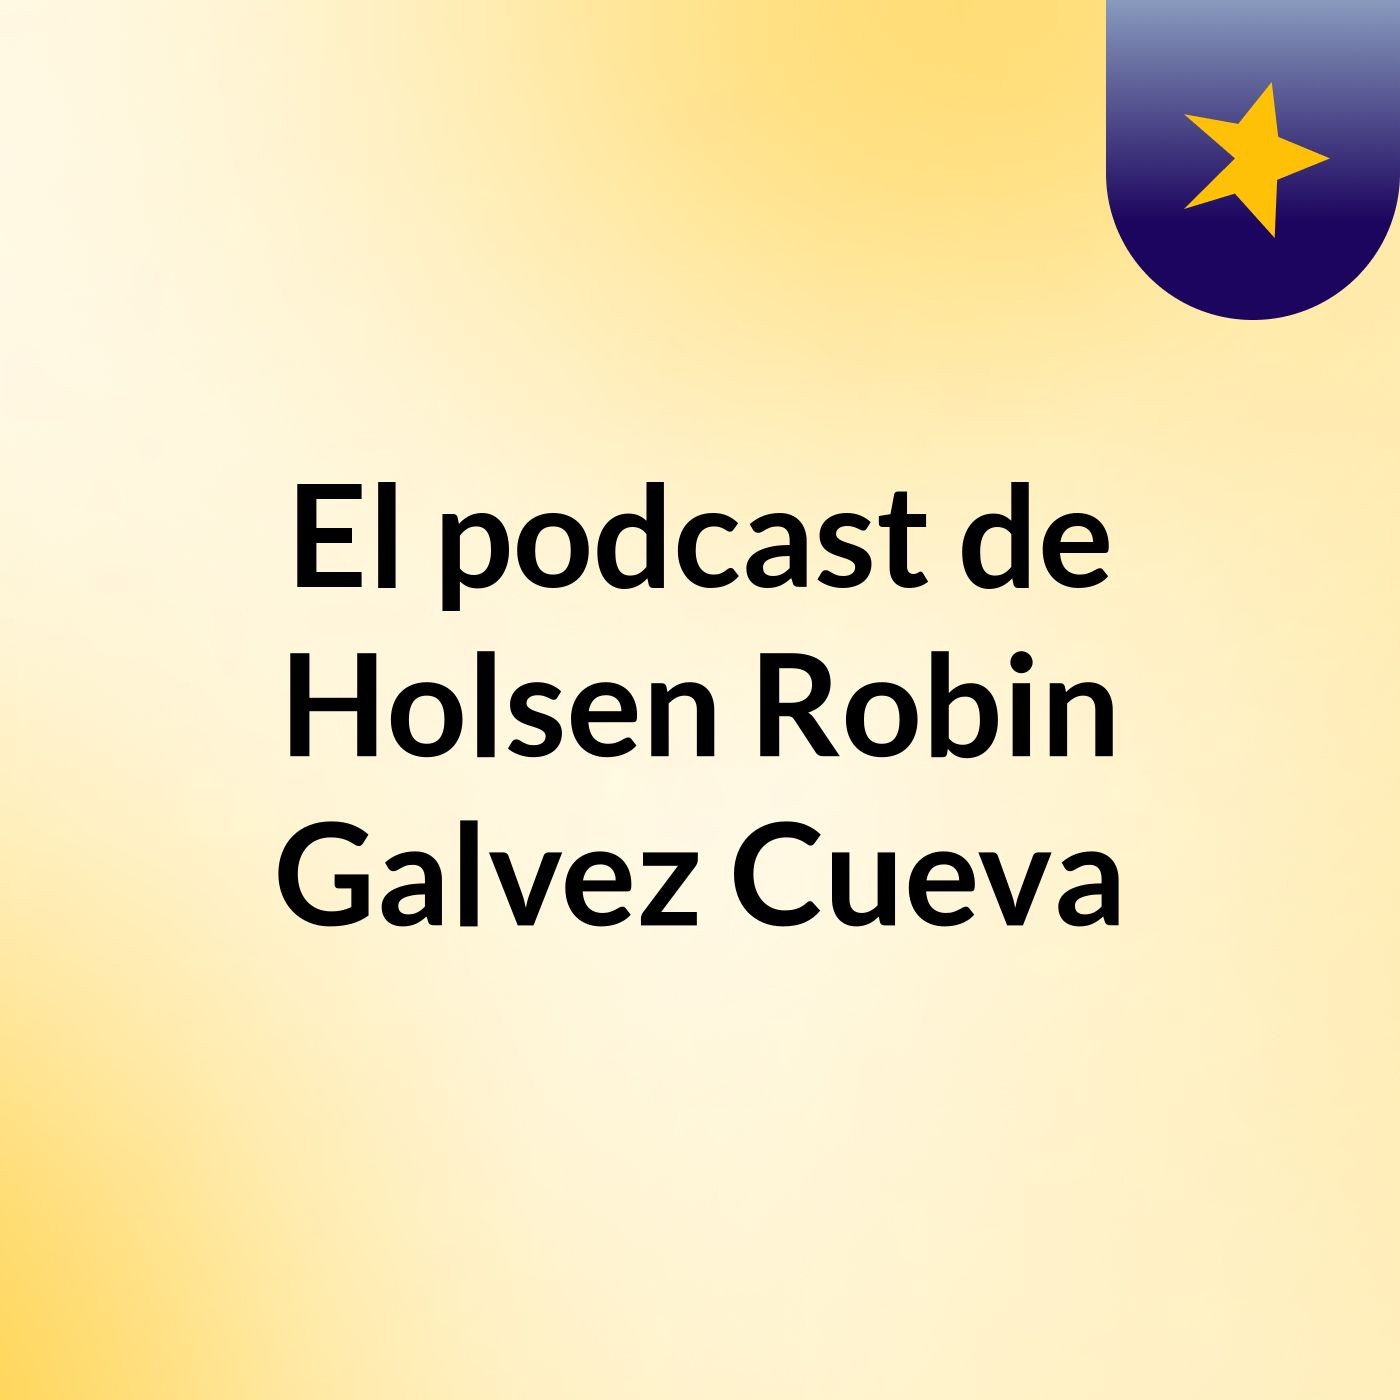 El podcast de Holsen Robin Galvez Cueva